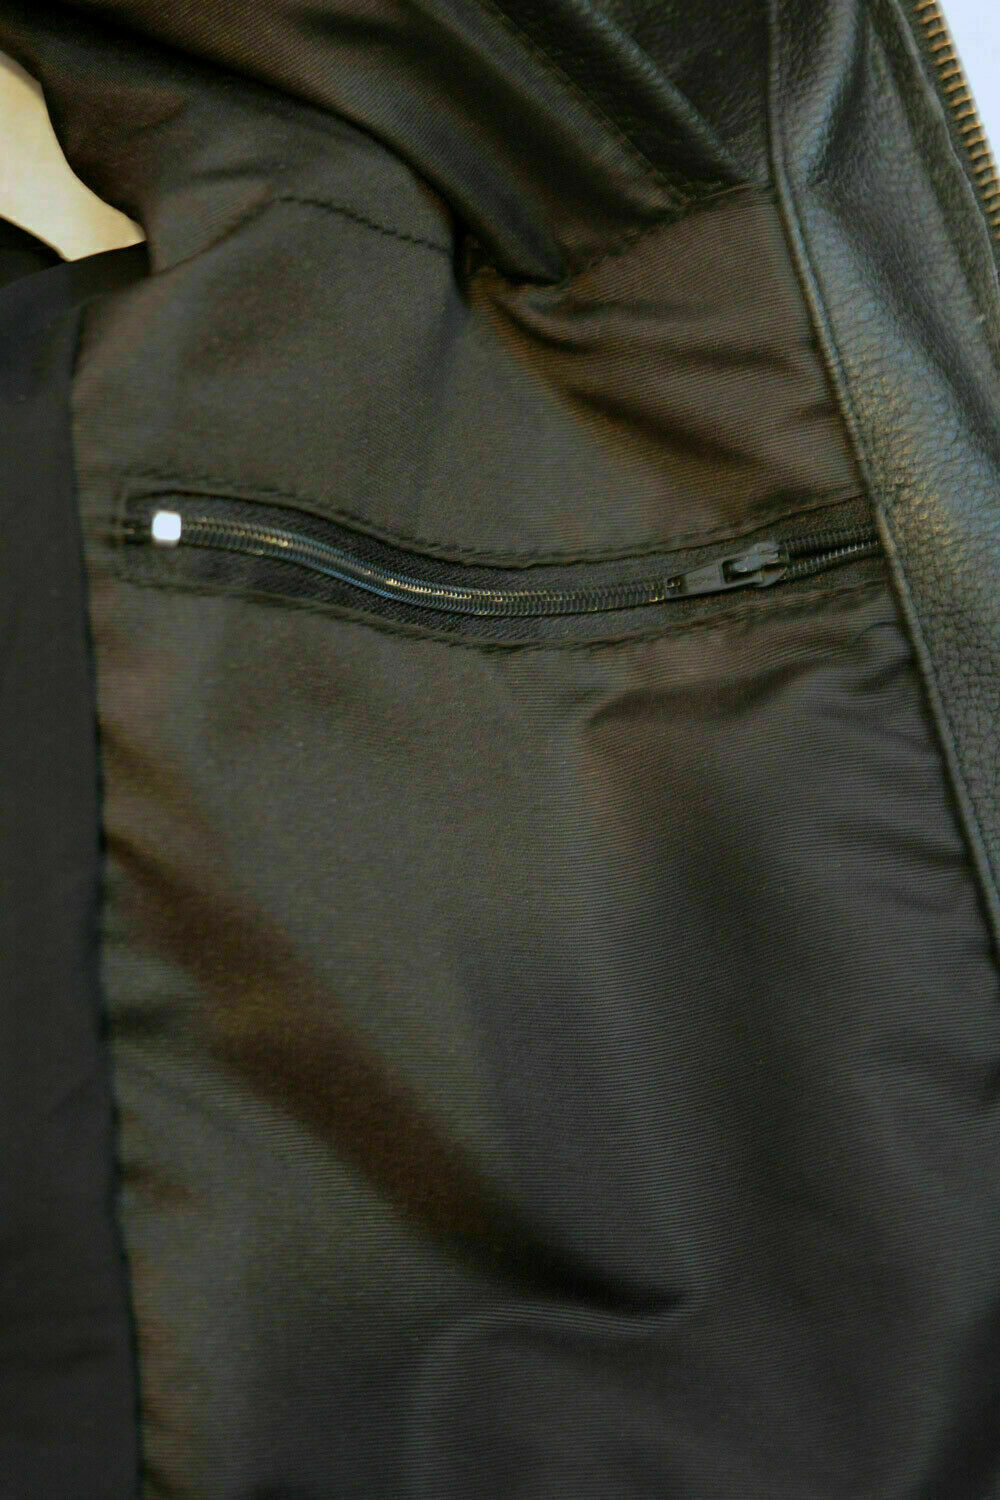 Spine Spark Stylish Biker Leather Vest Two Concealed Gun Pockets